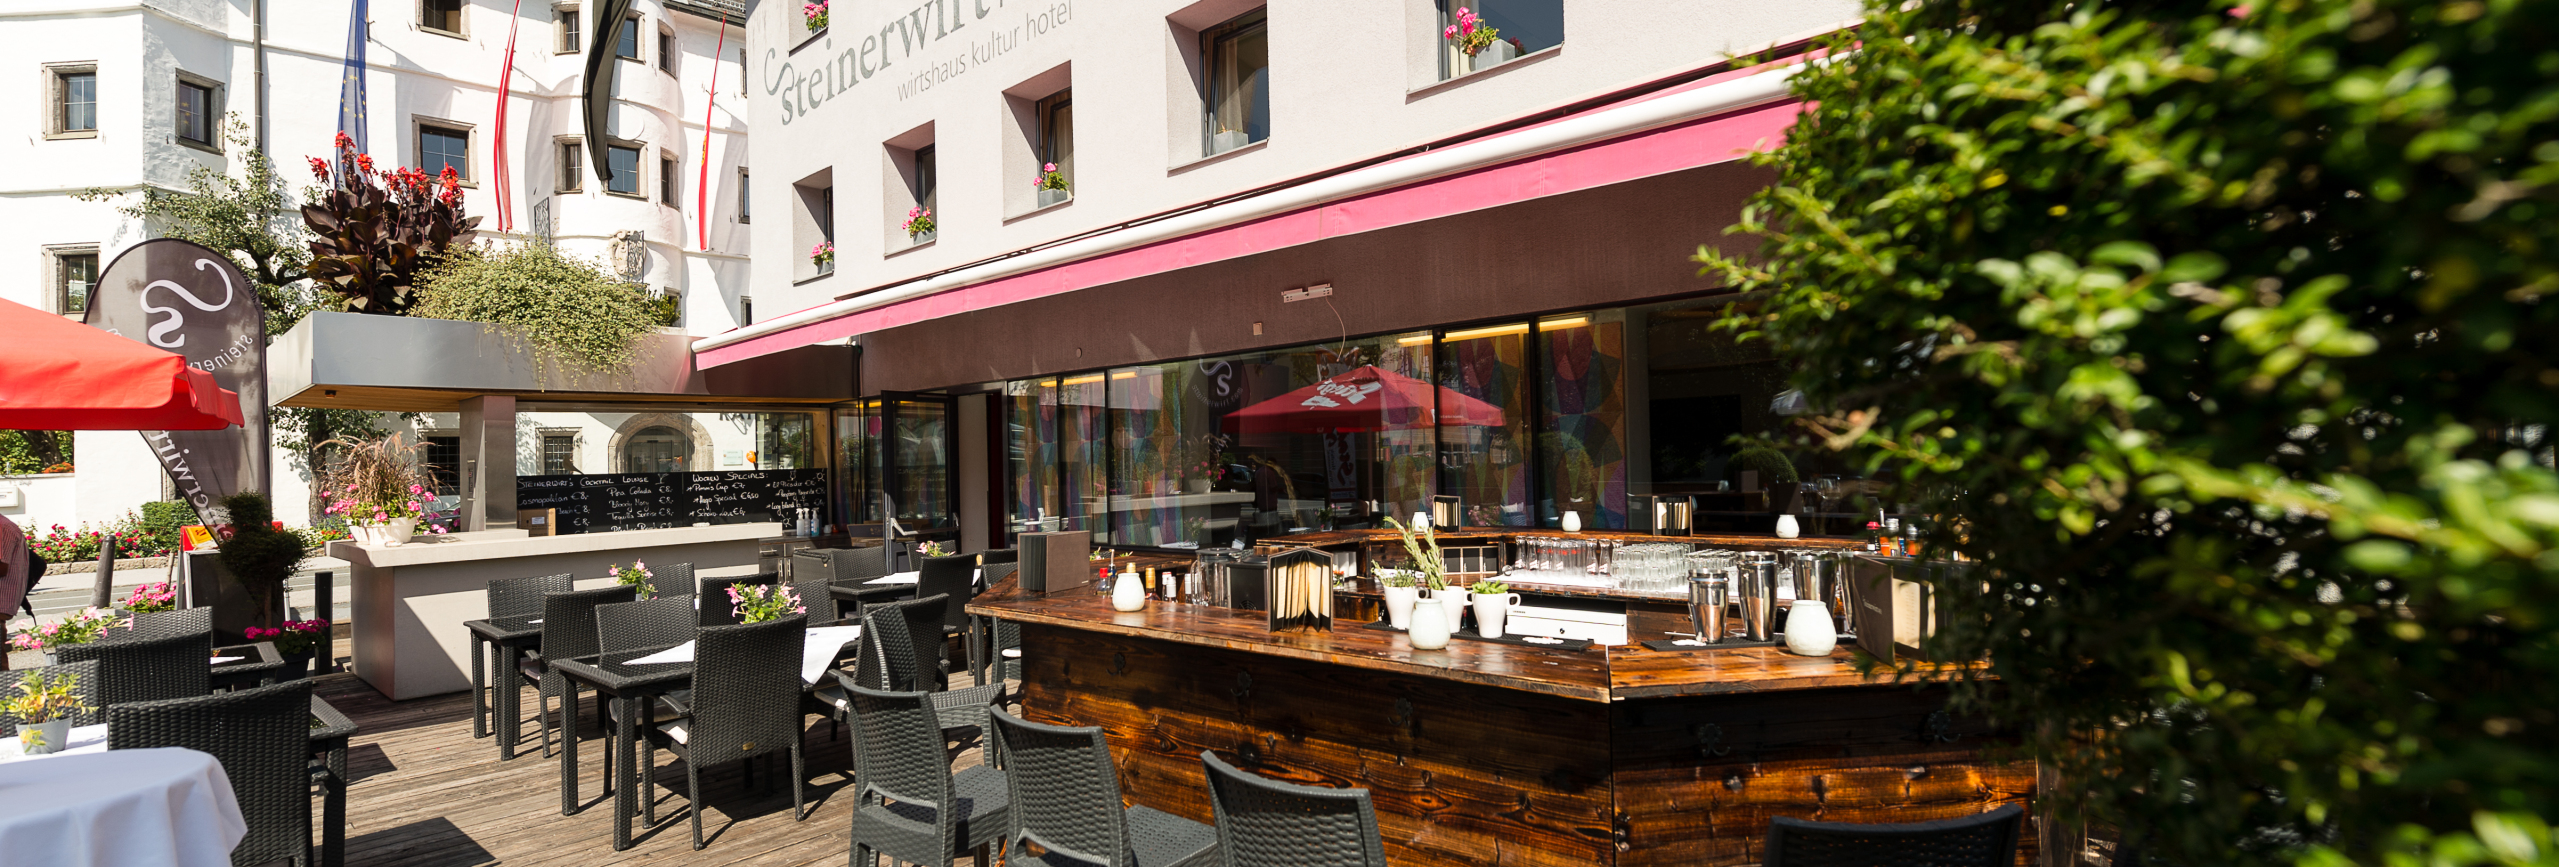 Hotel Restaurant Steinerwirt - Zimmer & Suiten in Zell am See